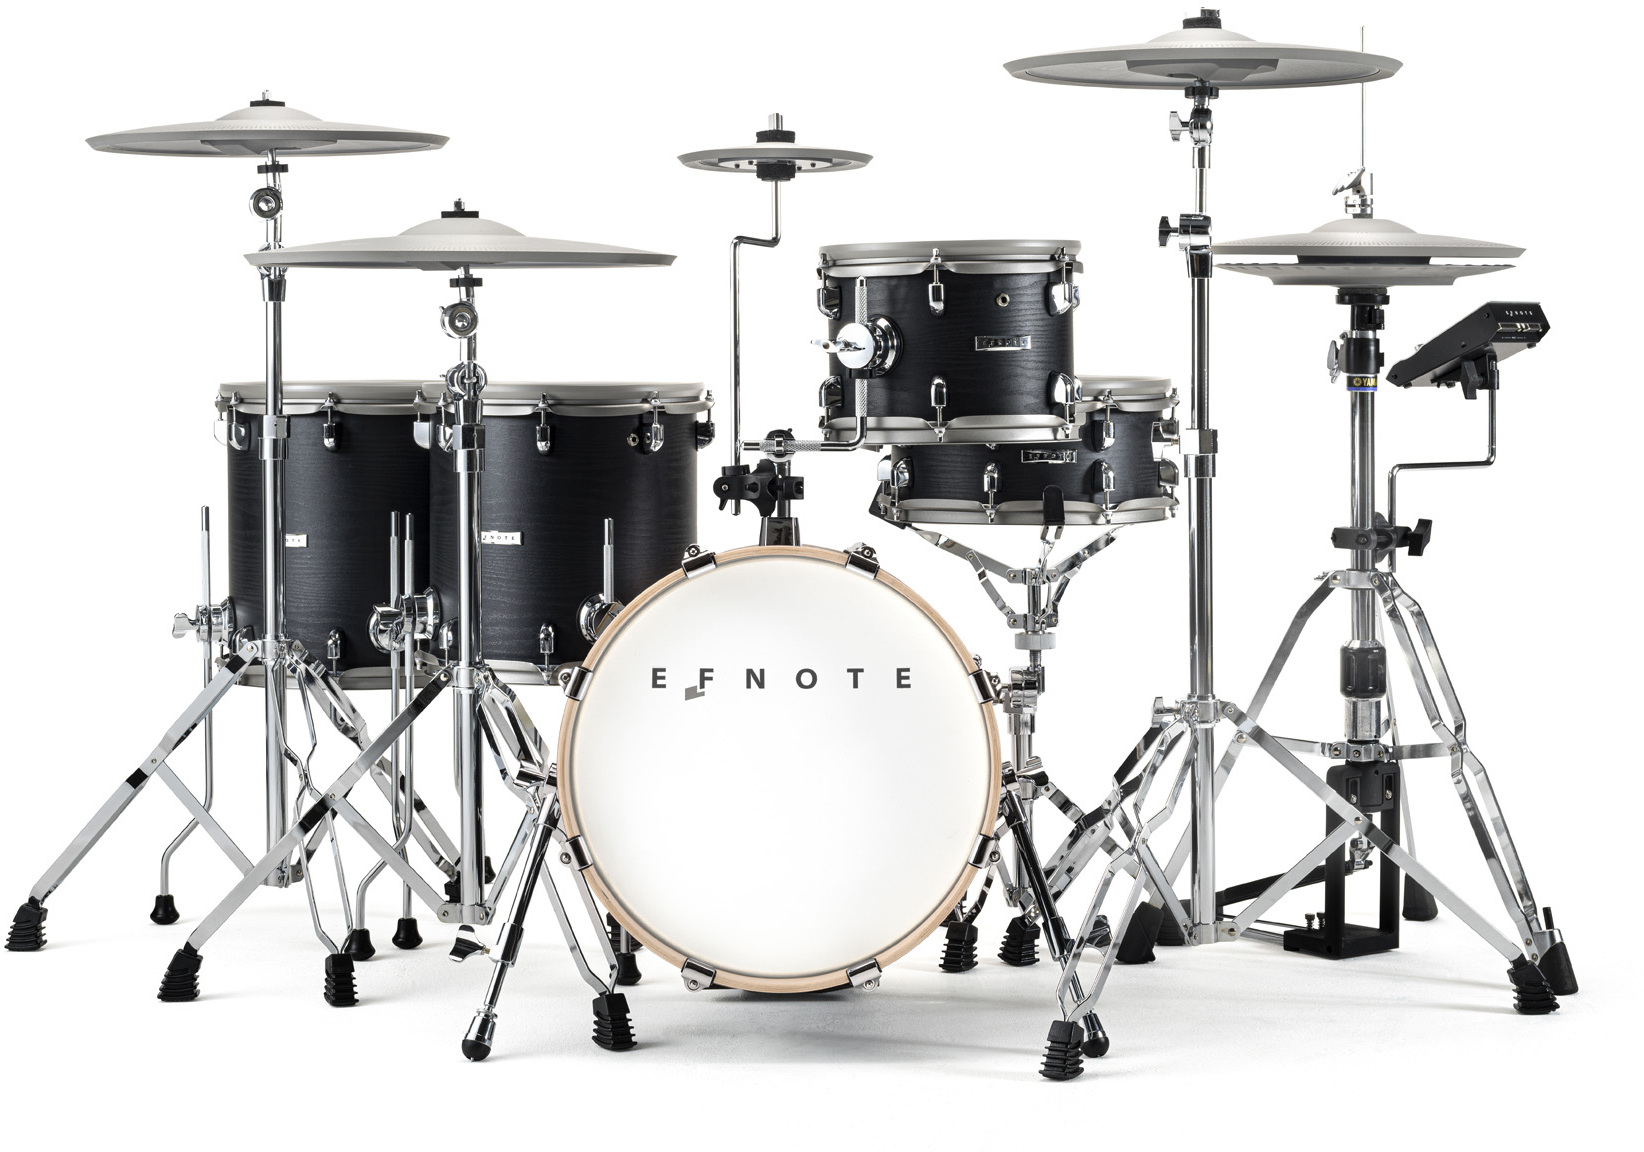 Efnote Efd5x Drum Kit - Elektronisch drumstel - Main picture